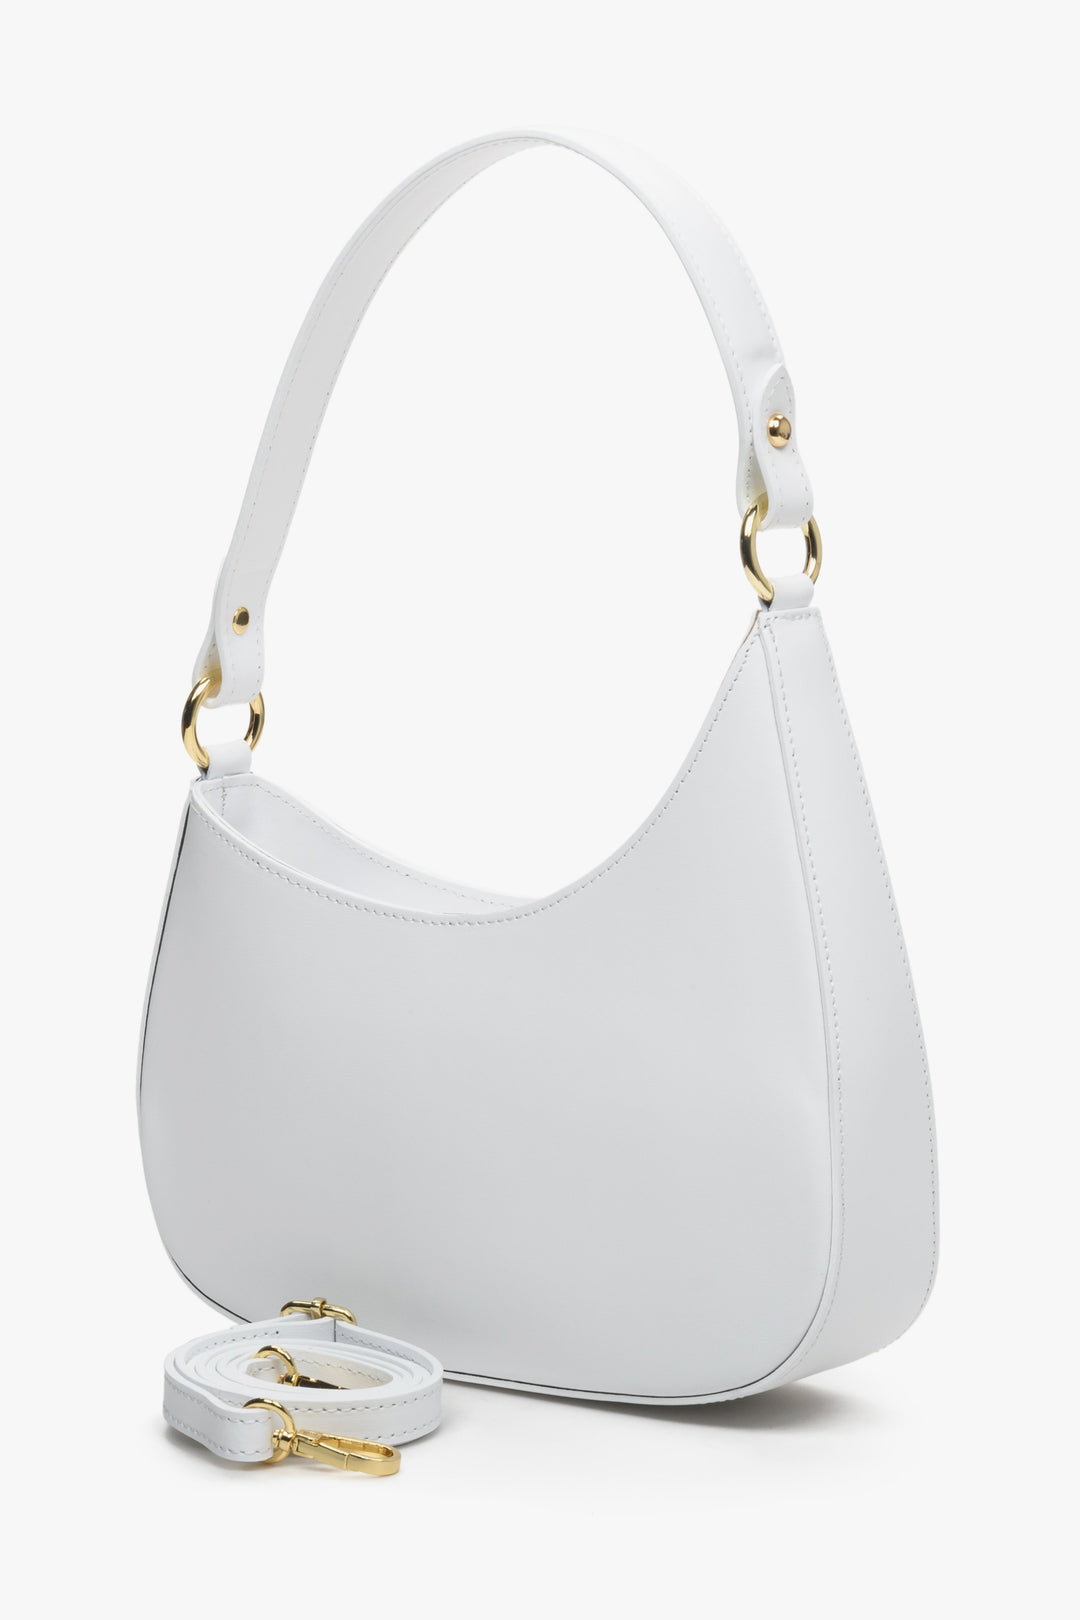 Women's white Estro shoulder bag with detachable strap.